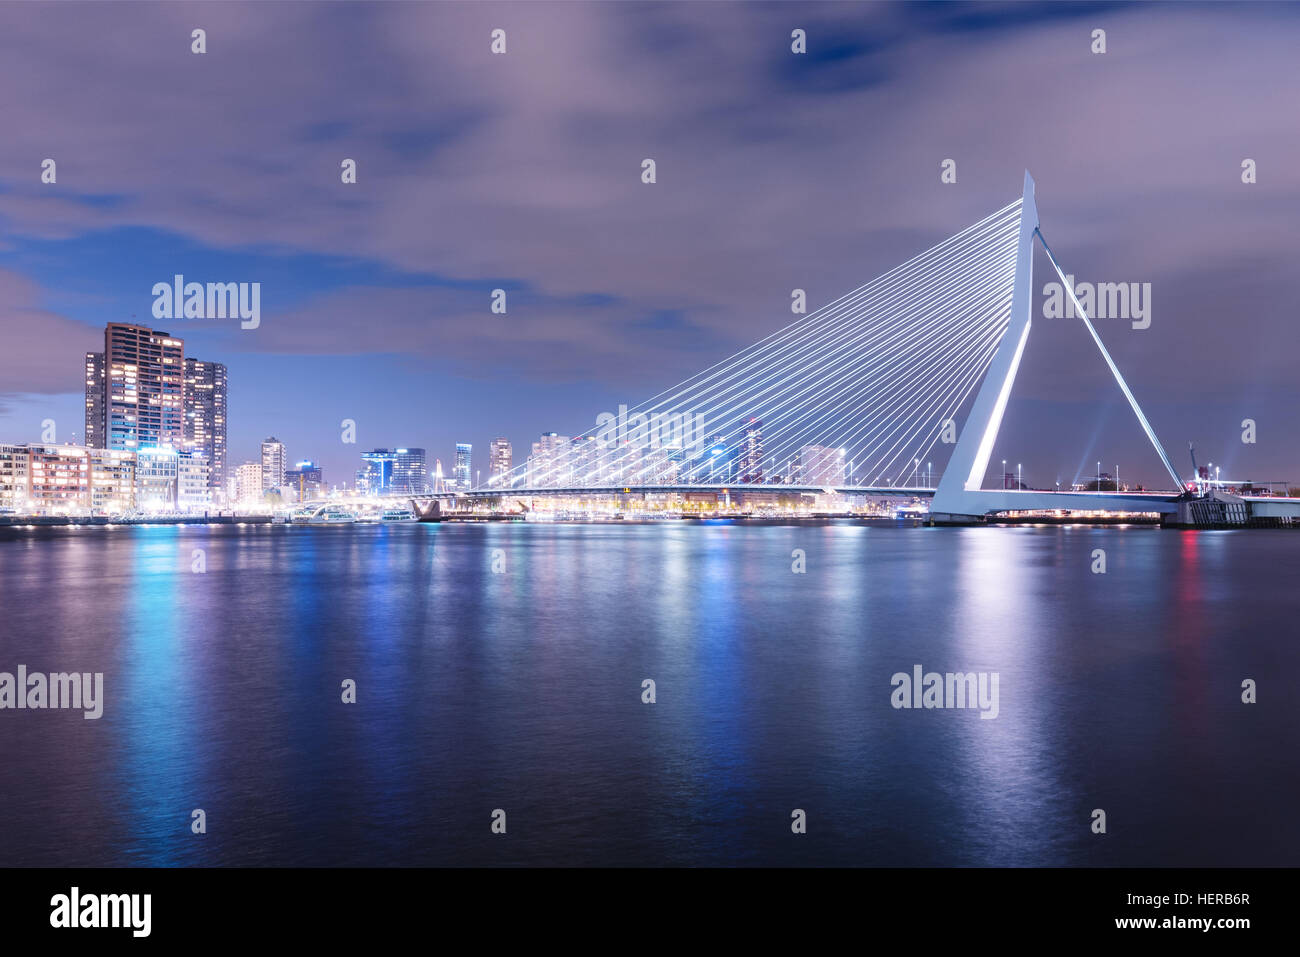 Erasmusbrücke am Abend in Rotterdam Stock Photo